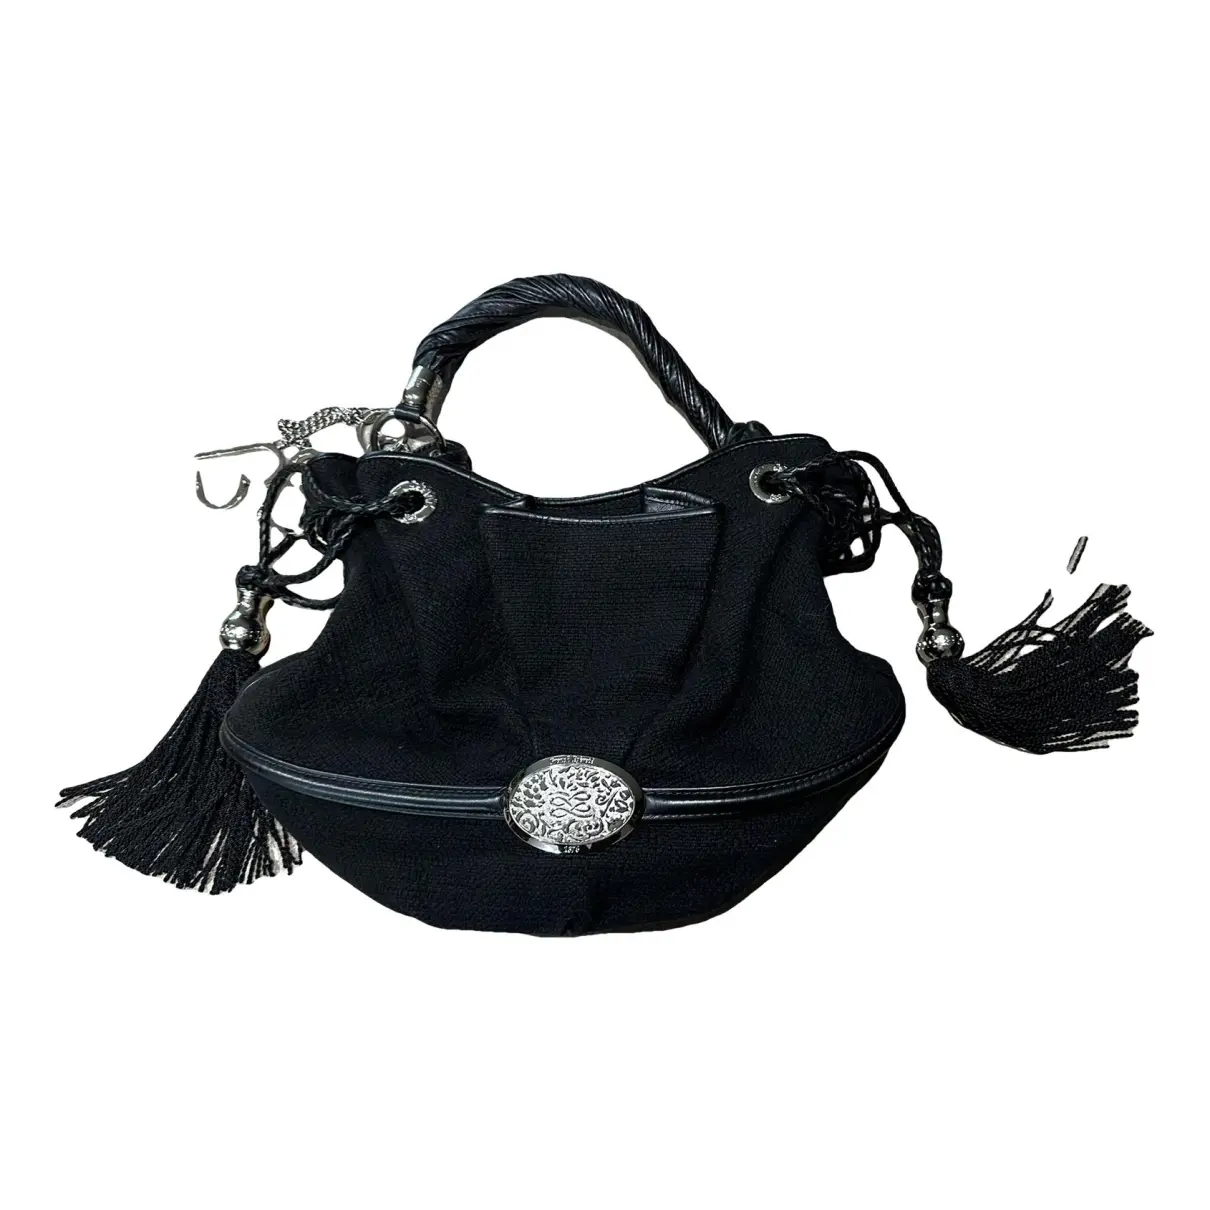 Brigitte Bardot handbag